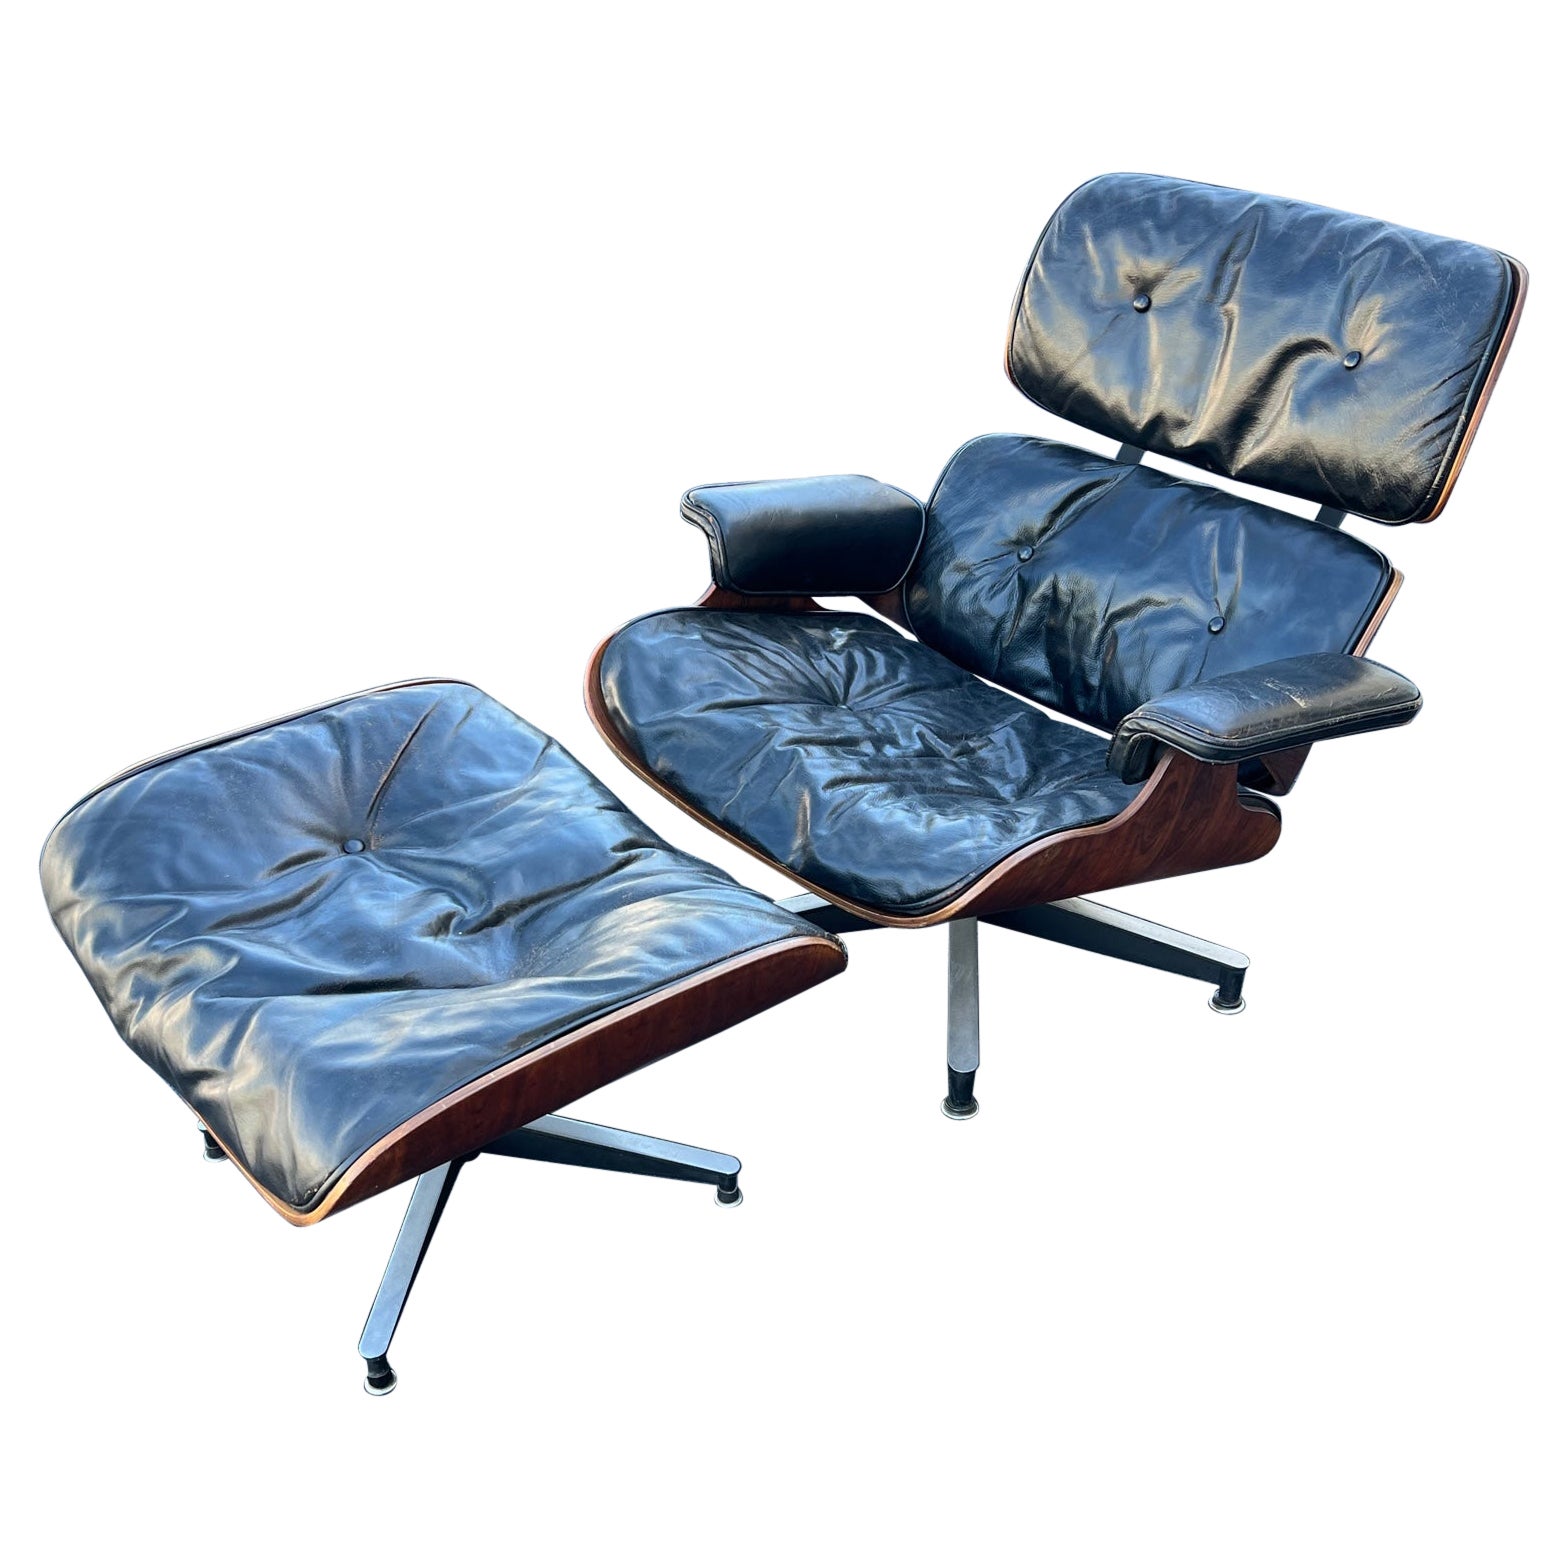 Original Charles Eames Herman Miller Lounge Chair und Ottoman 1959